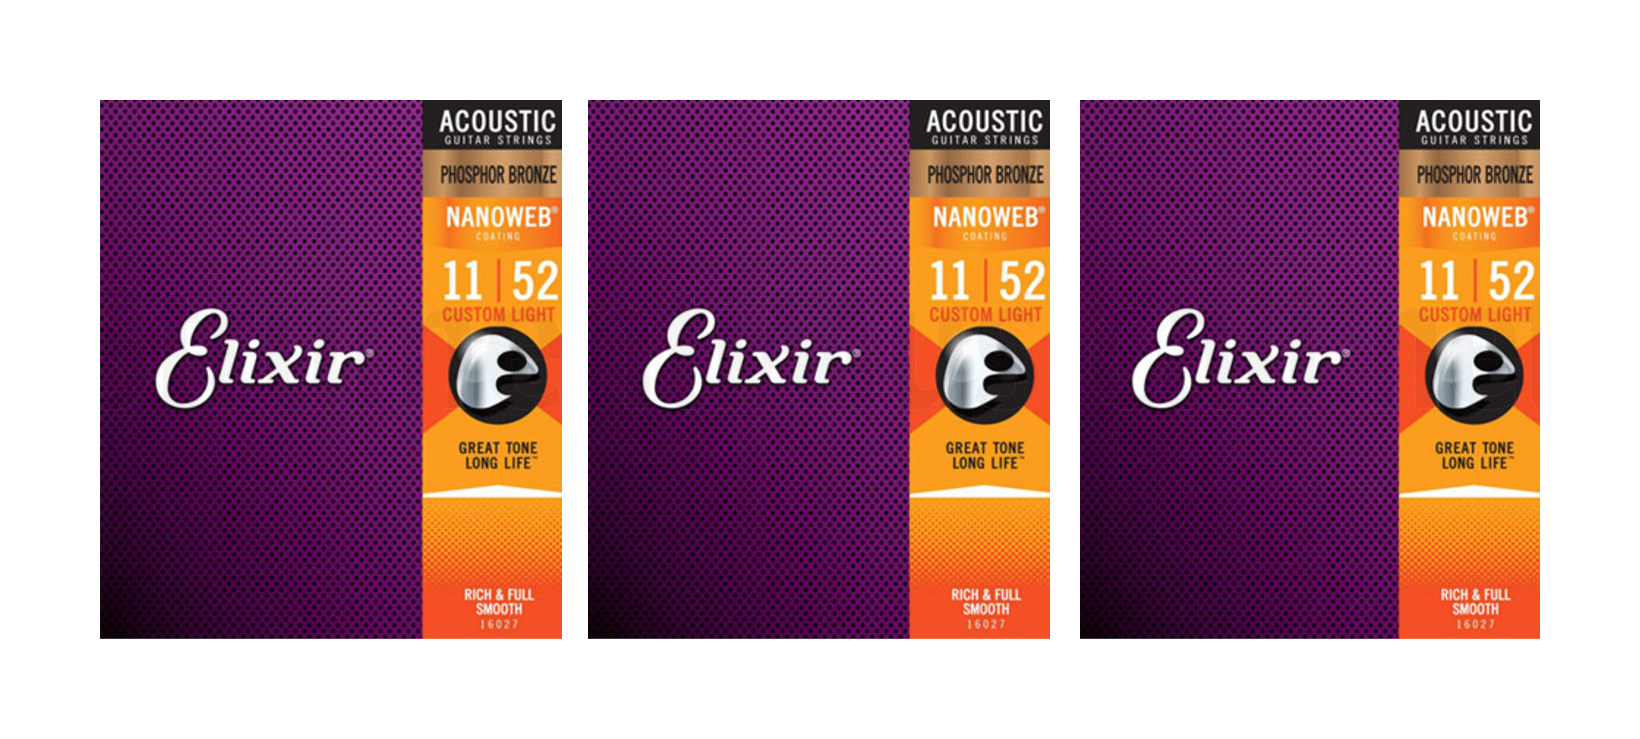 Elixir 3x2 Pack 16544 Acoustic Phosphor